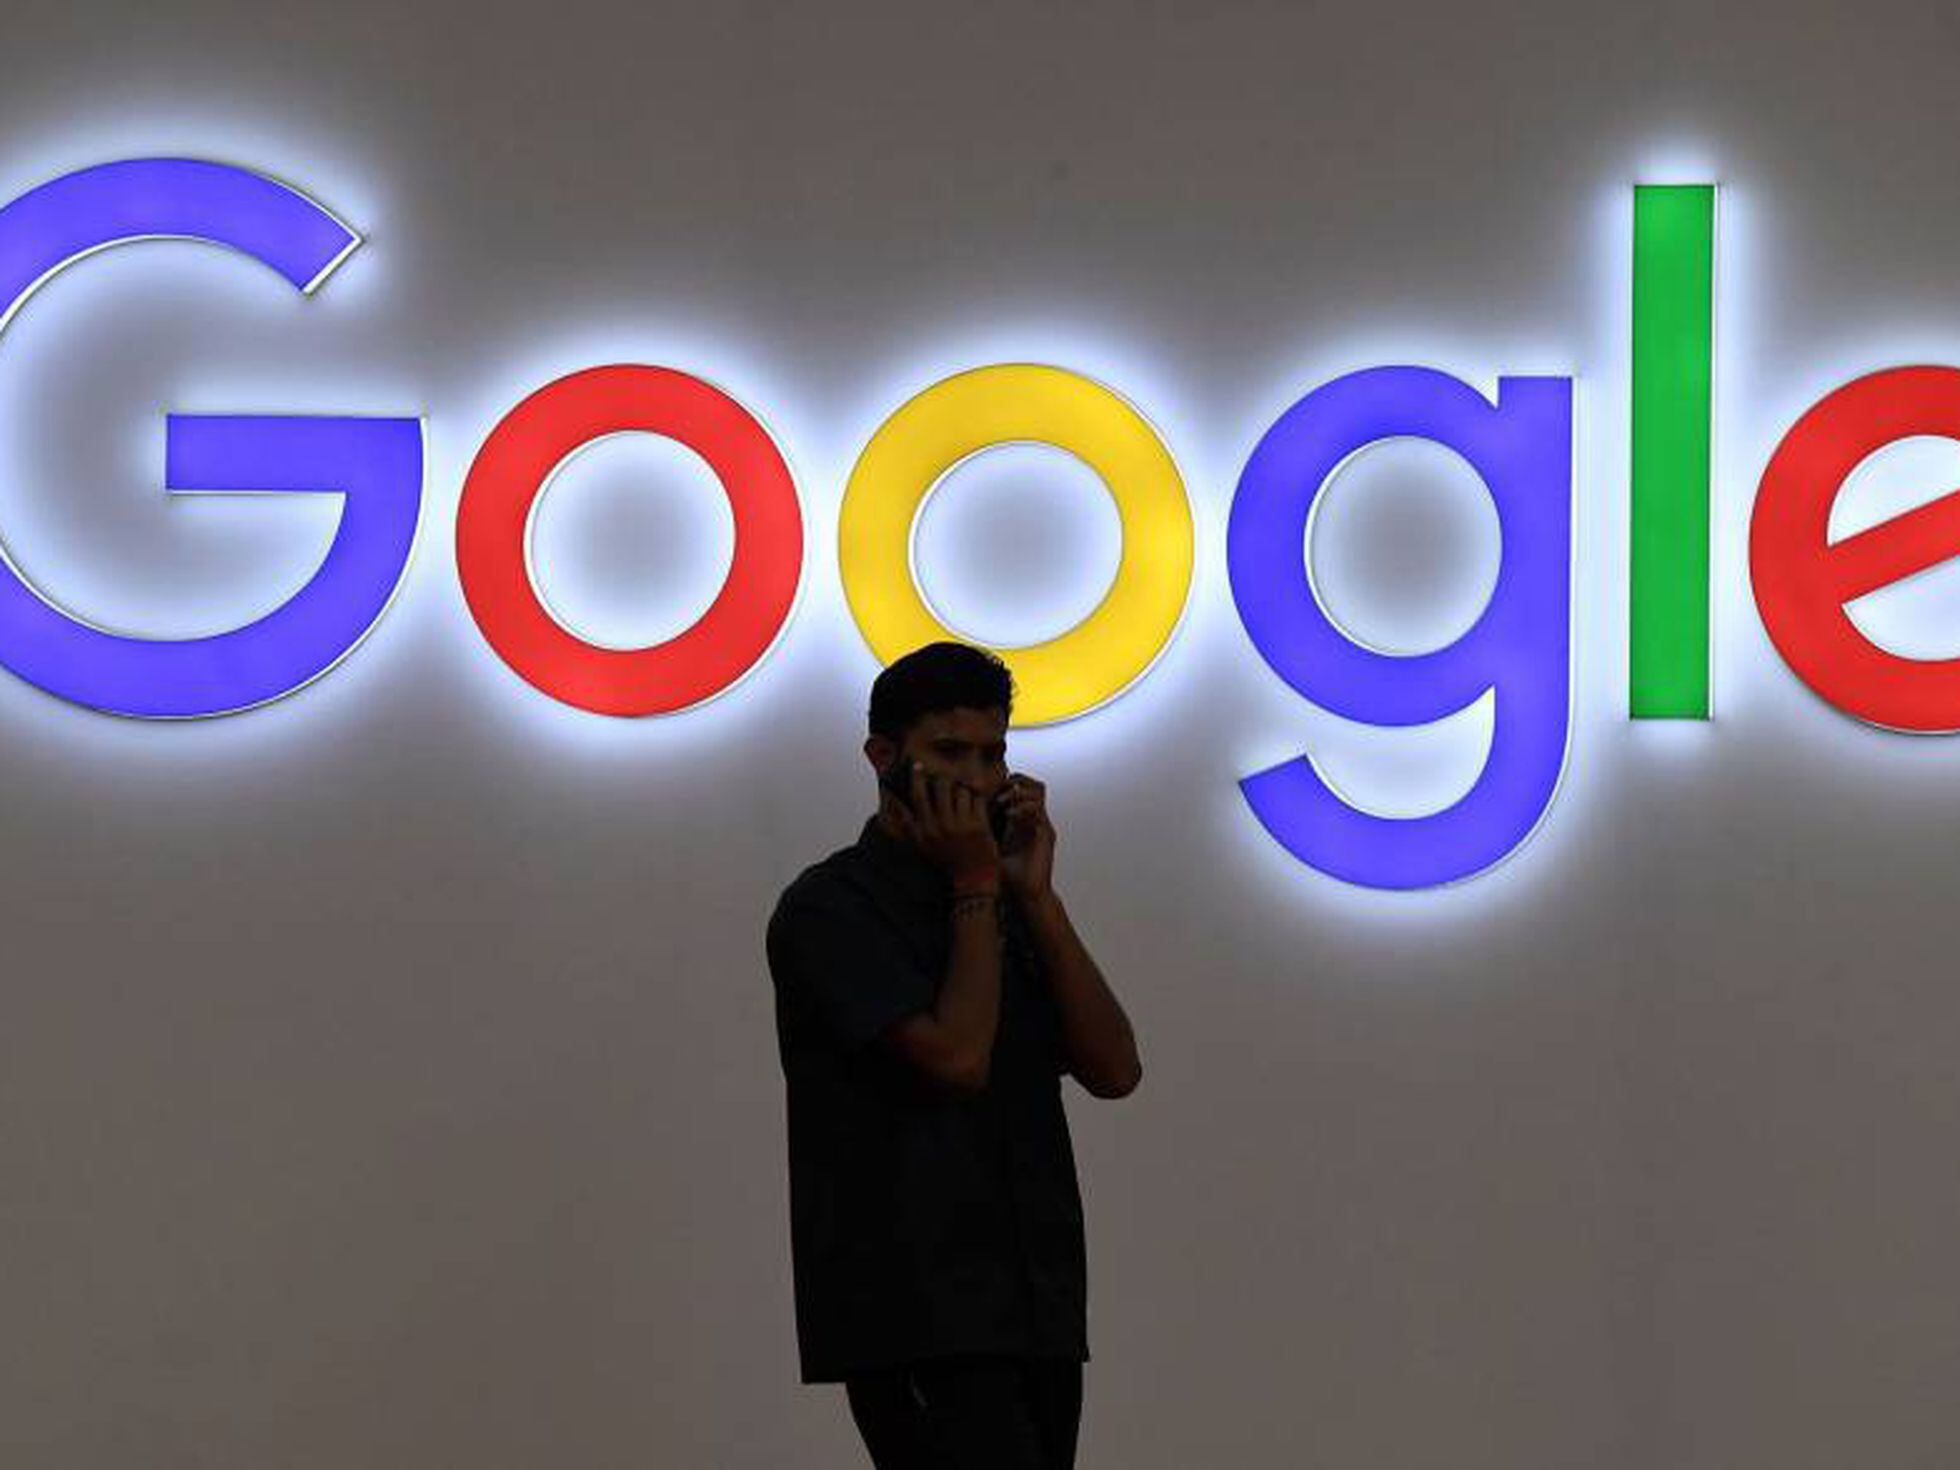 Aniversário do Google: 19 anos cheios de surpresas